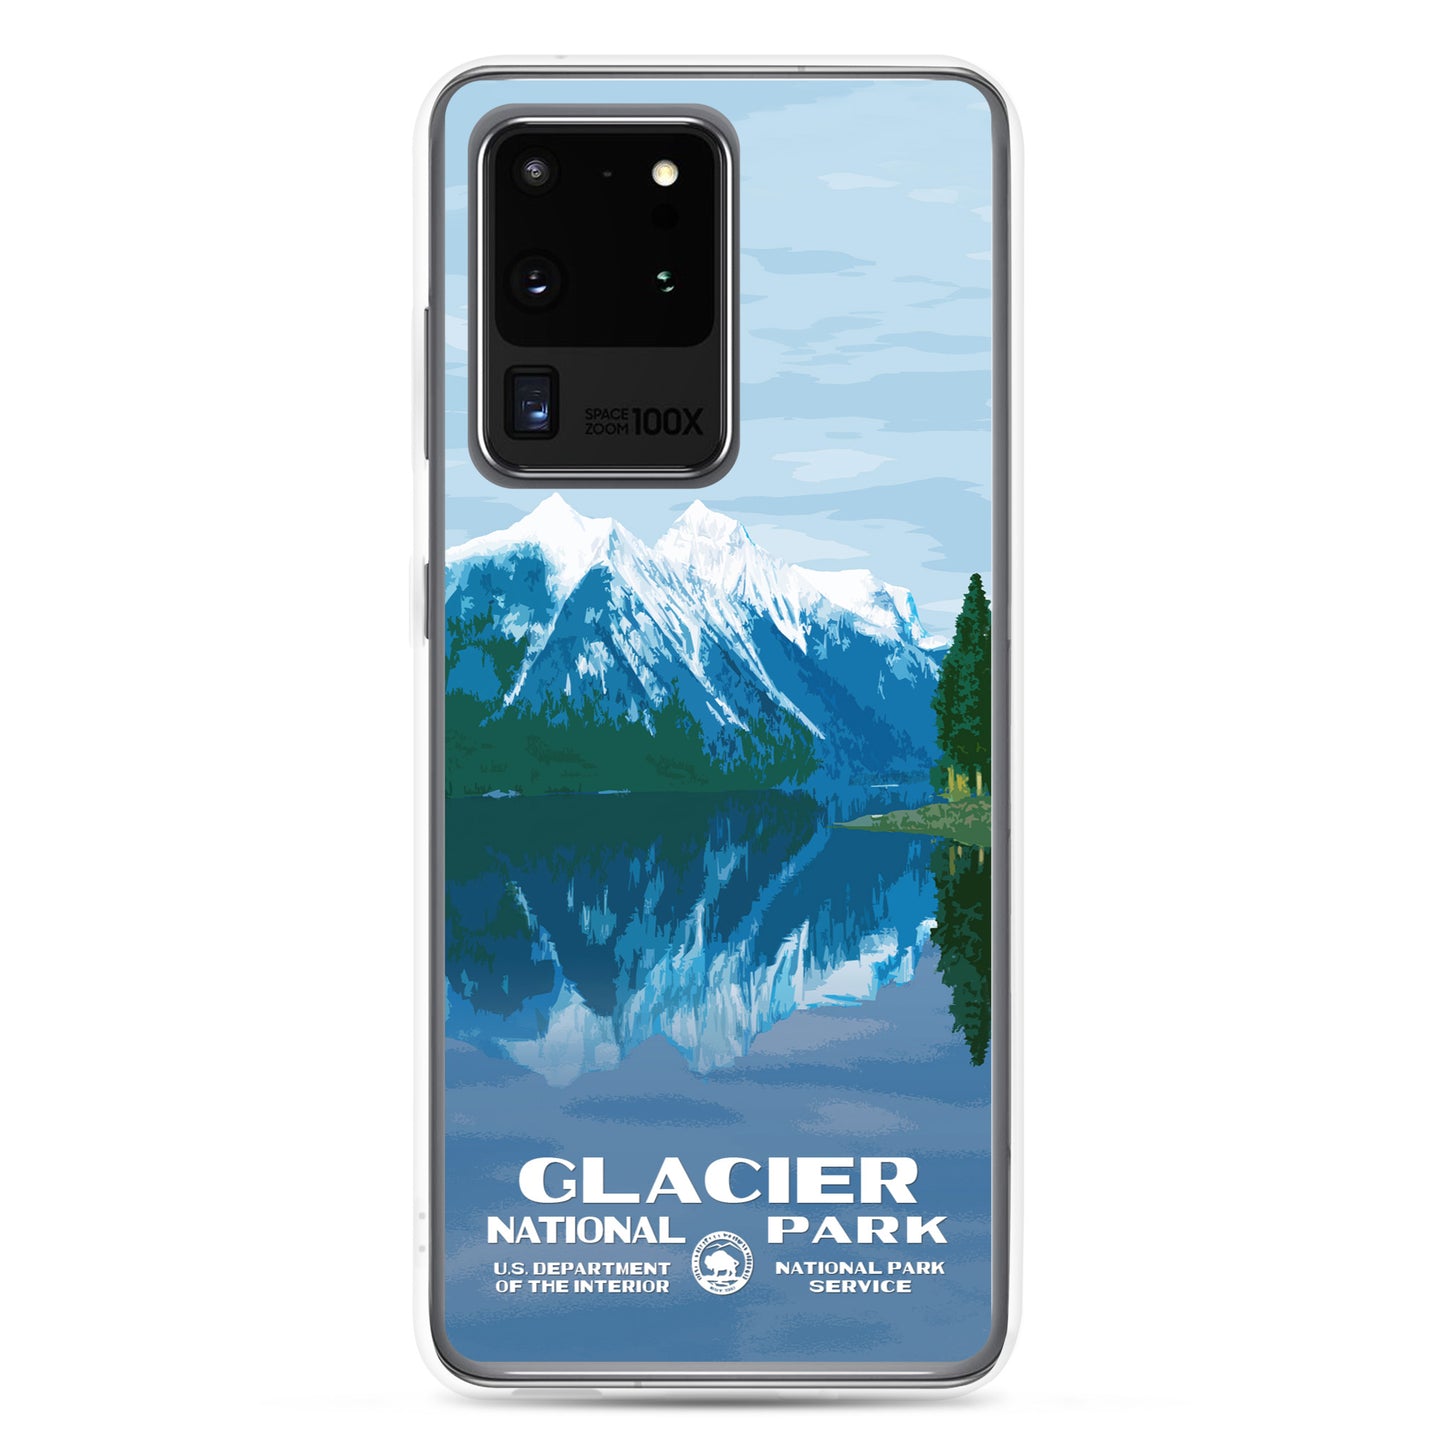 Glacier National Park Samsung® Phone Case